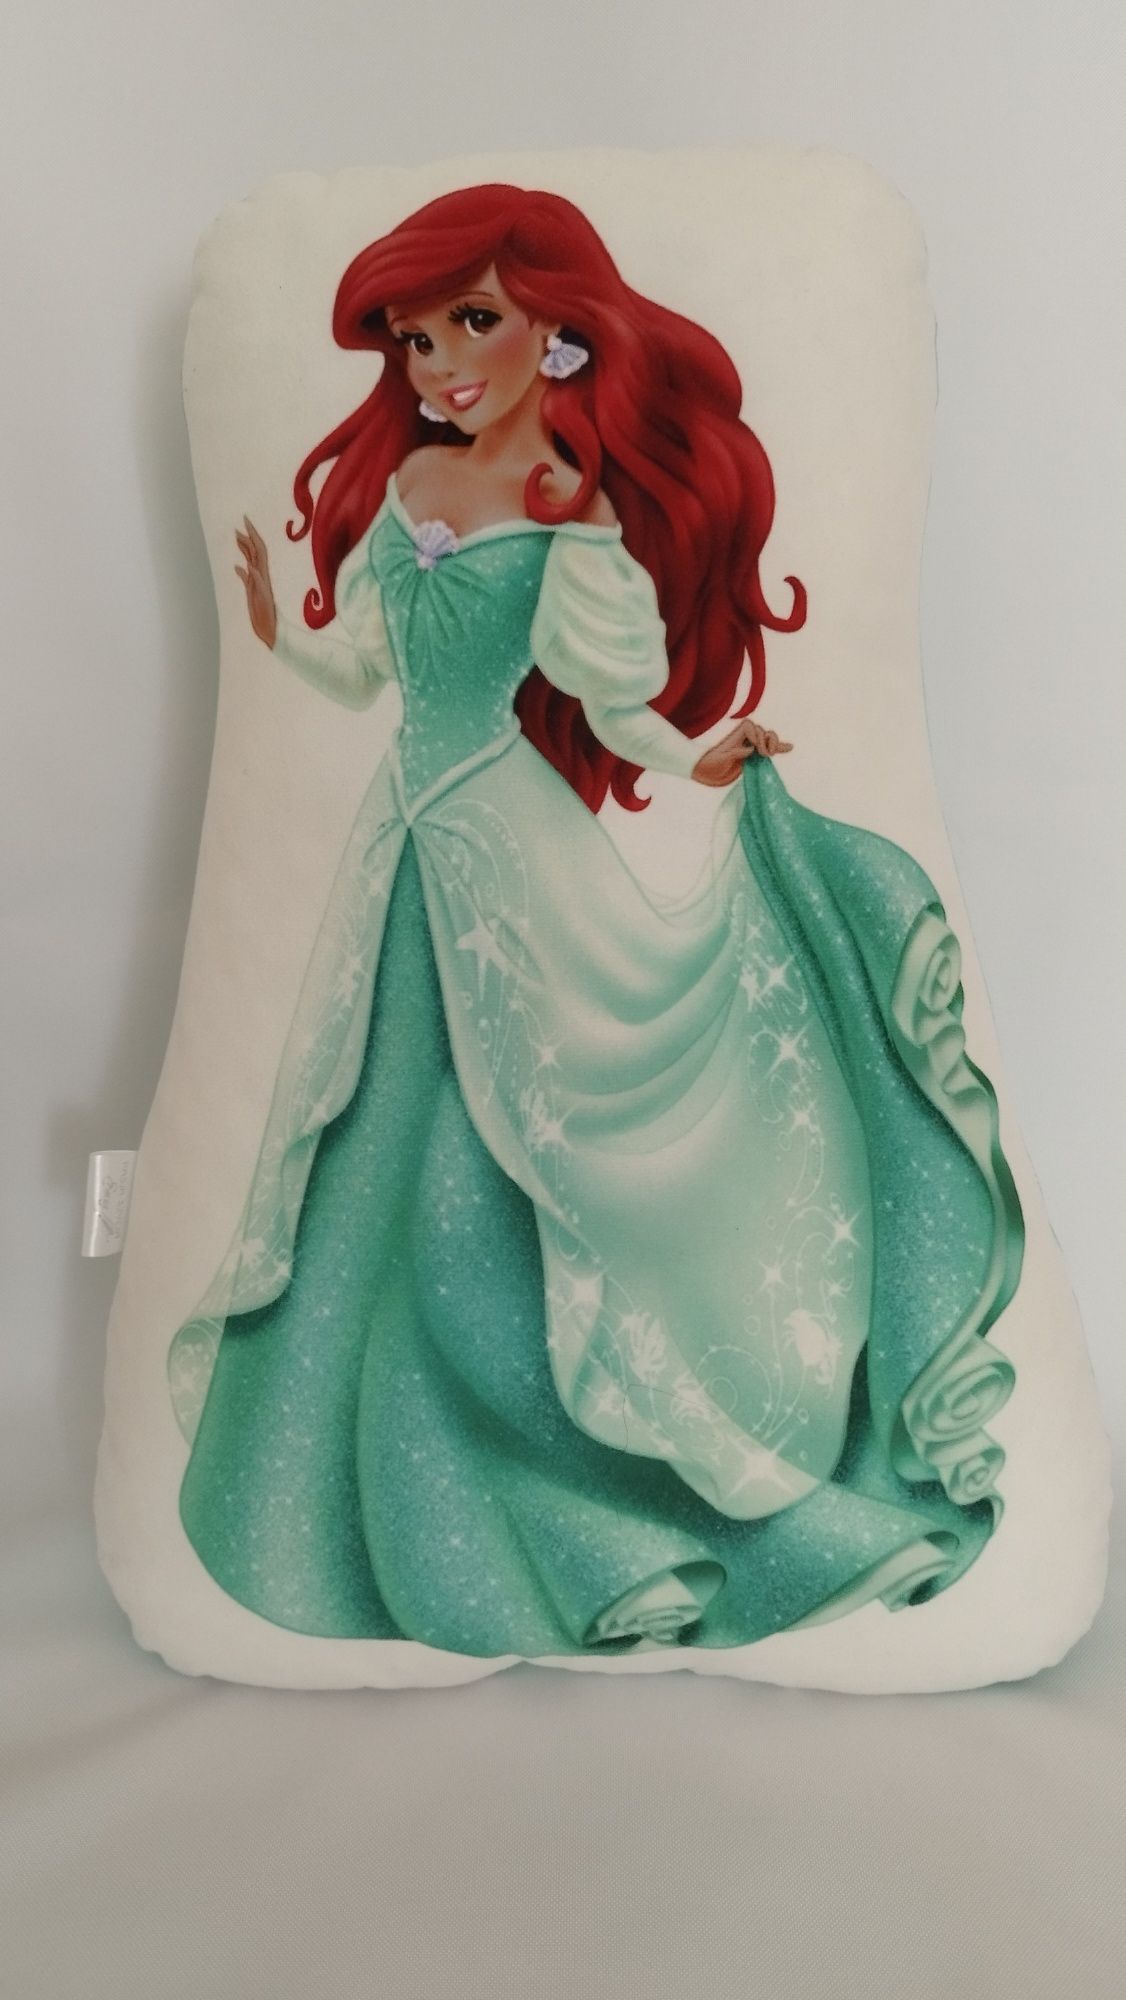 Przytulanka poduszka, mała syrenka Ariel.